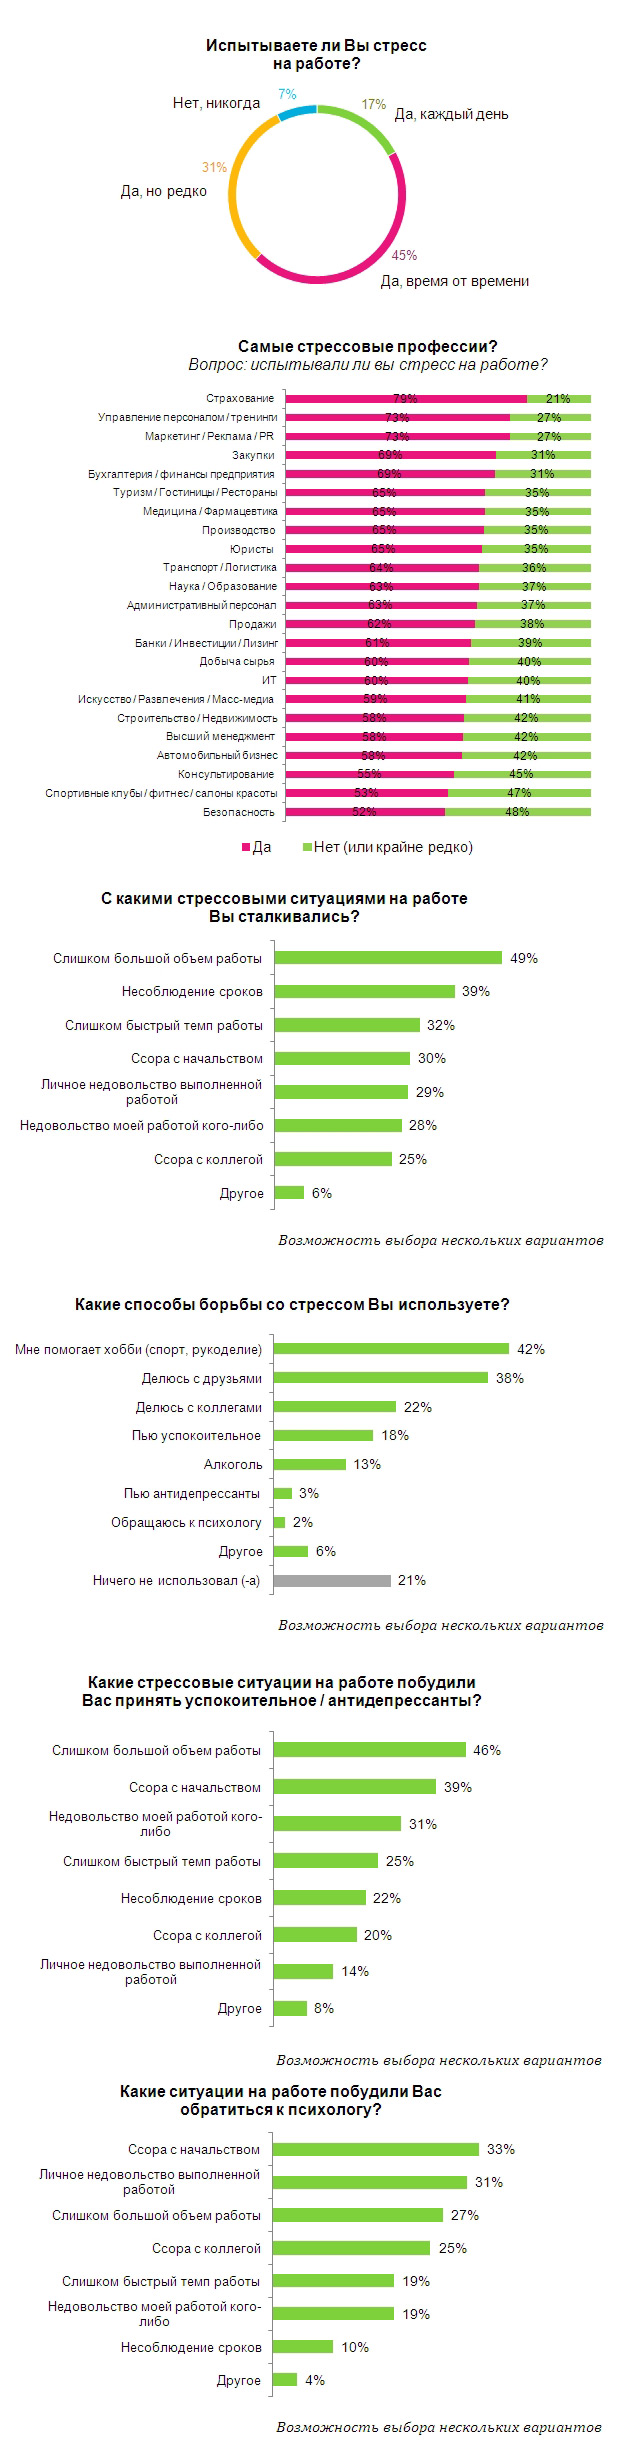 Исследование HeadHunter: Рейтинг самых стрессовых профессий России в 2014 году